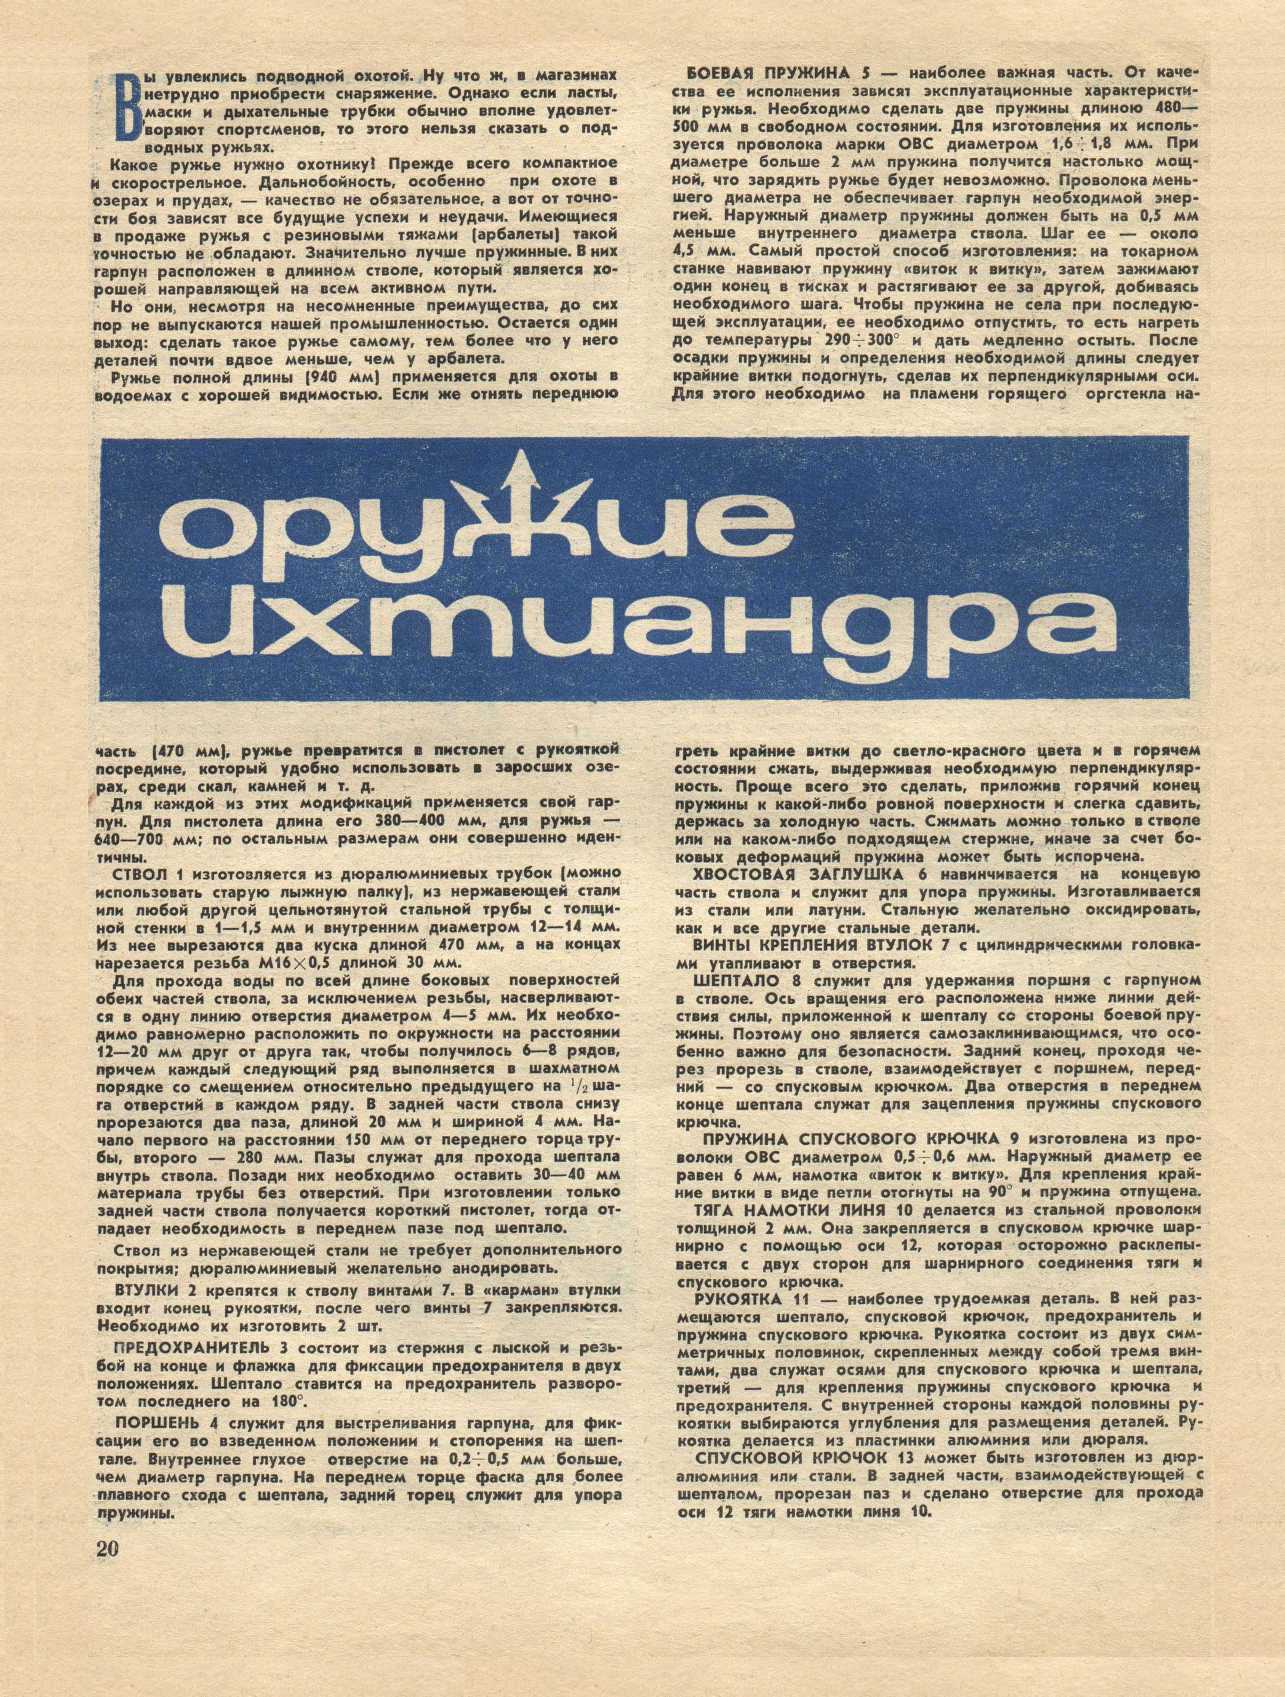 МК 4, 1967, 20 c.